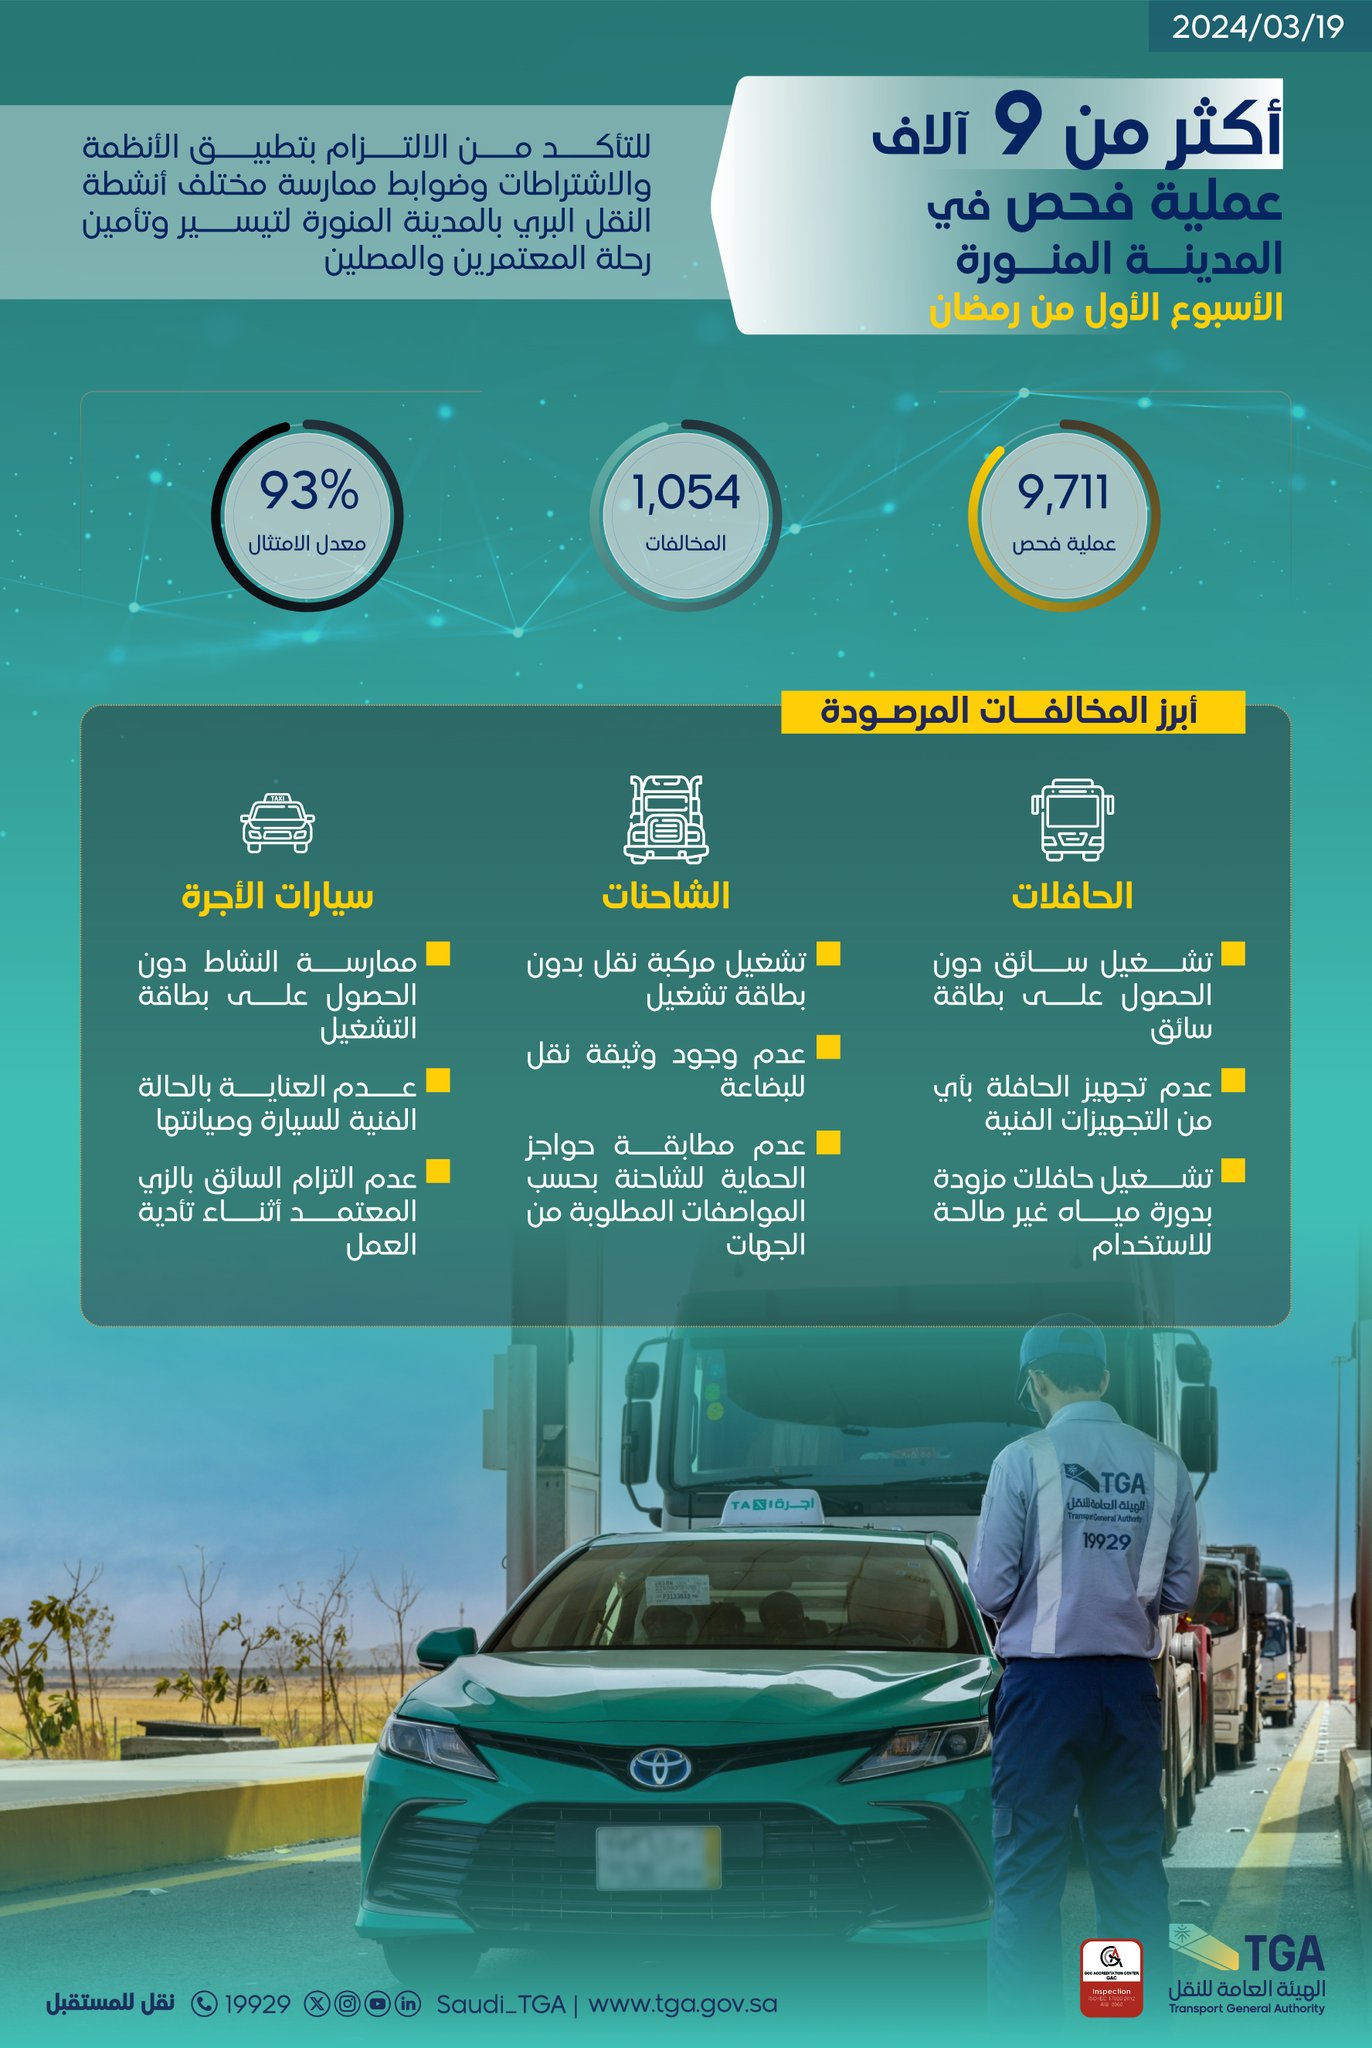  "هيئة النقل" تُنفِّذ أكثر من 34 ألف عملية فحص في مكة المكرمة والمدينة المنورة خلال الأسبوع الأول من رمضان